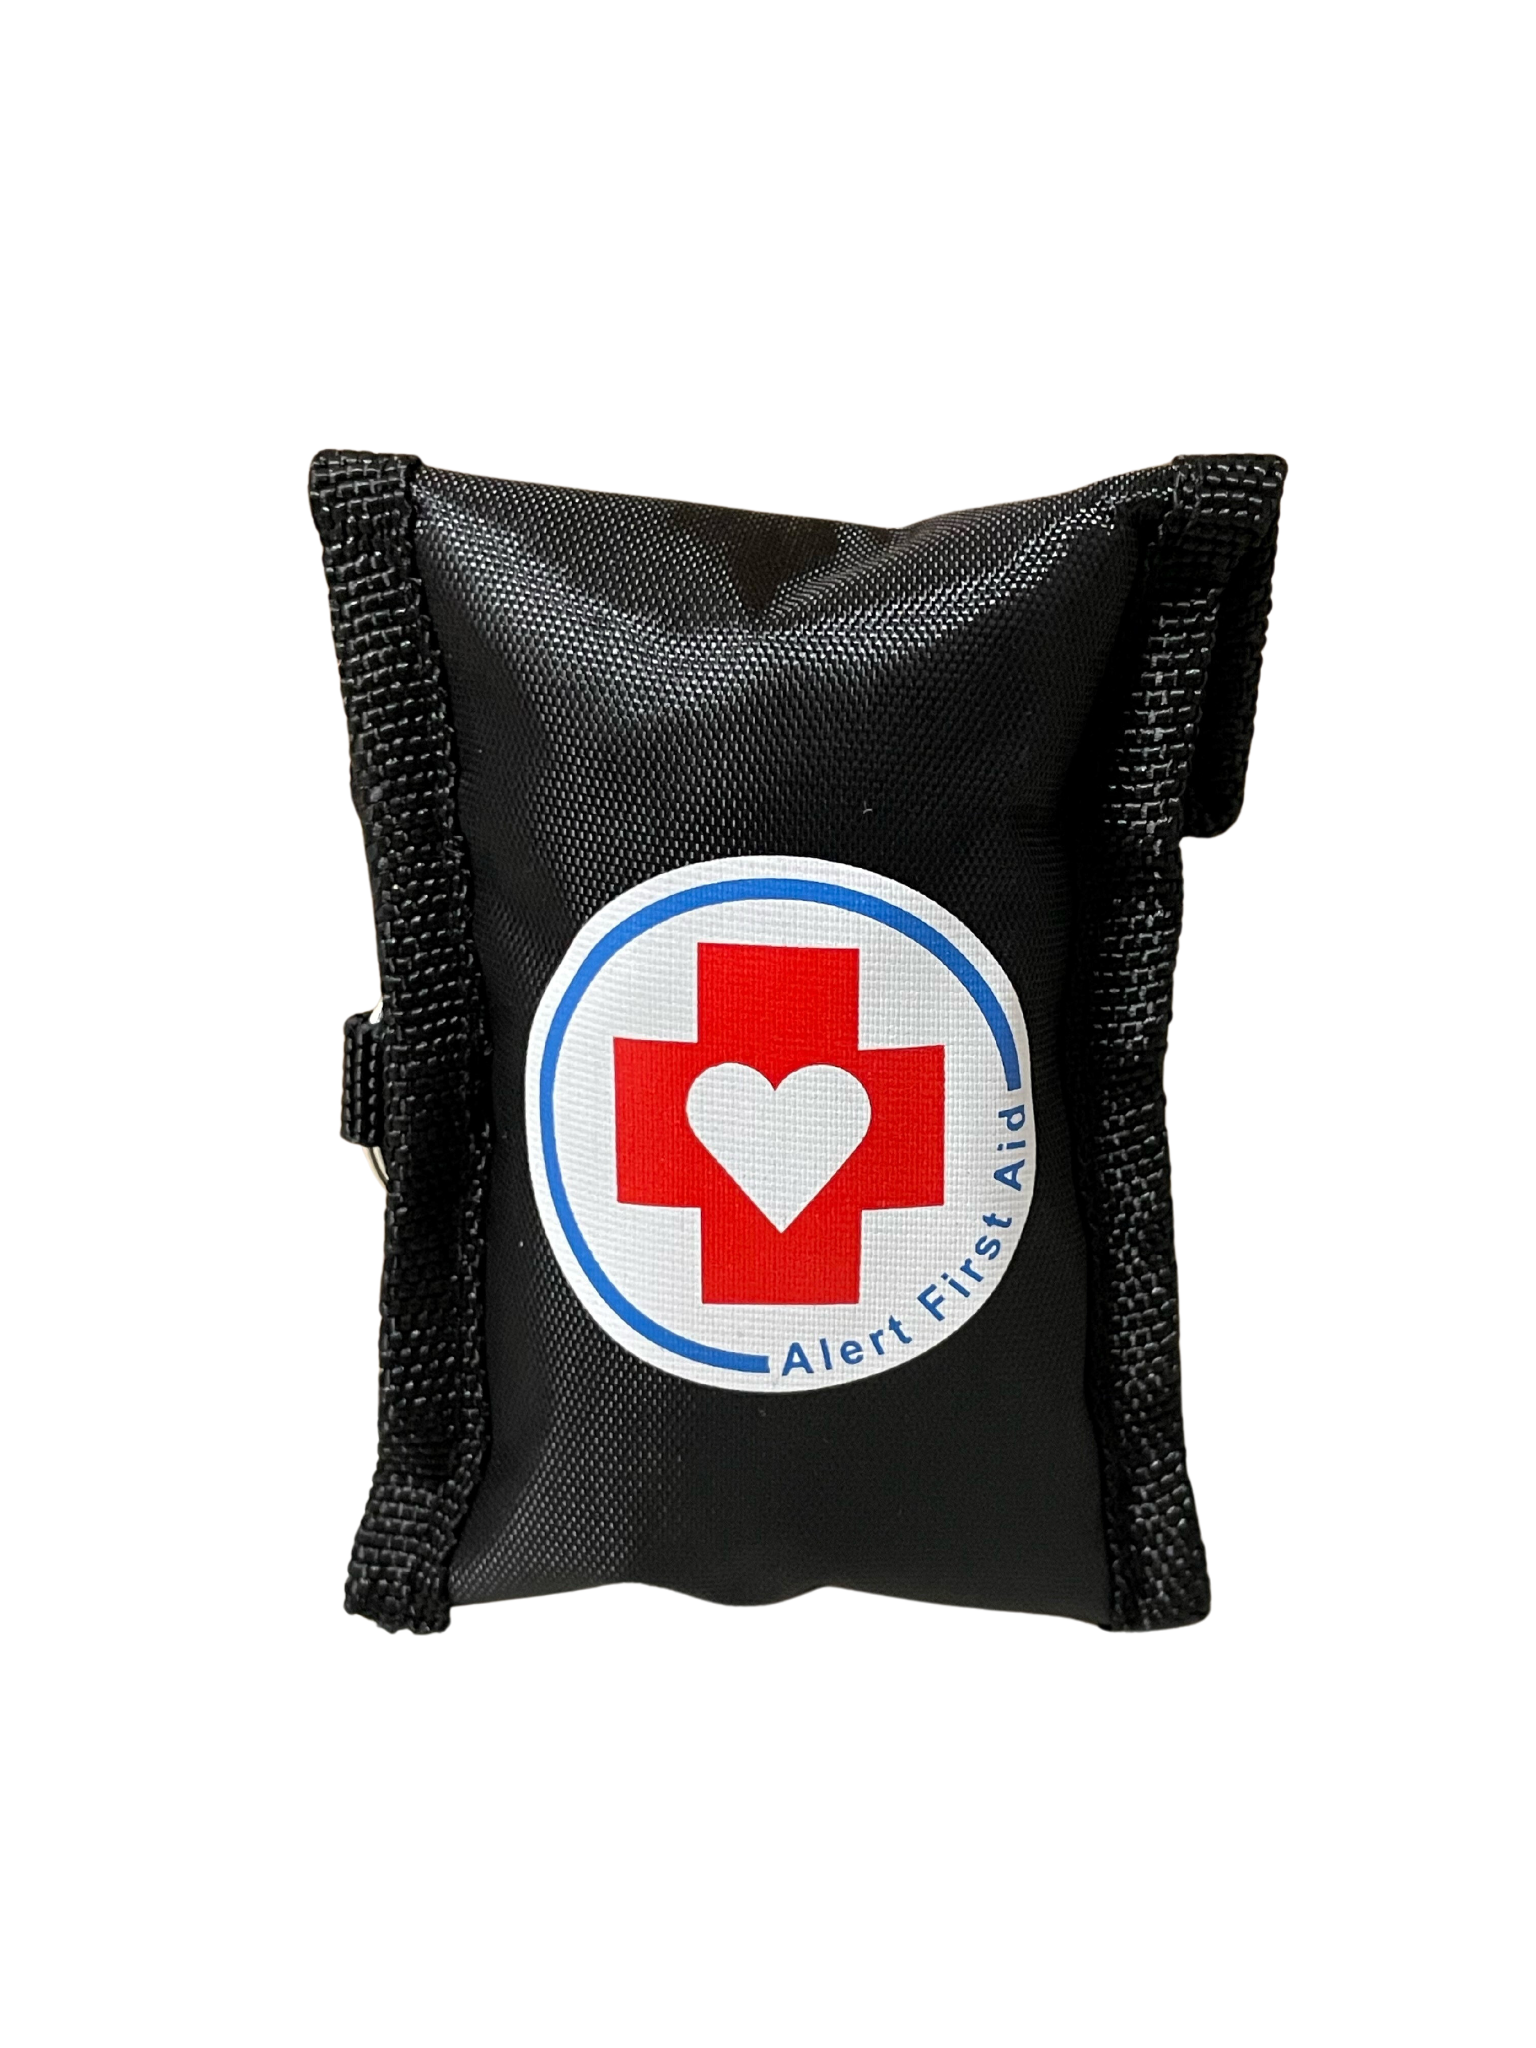 Alert First Aid CPR Keychain - Black